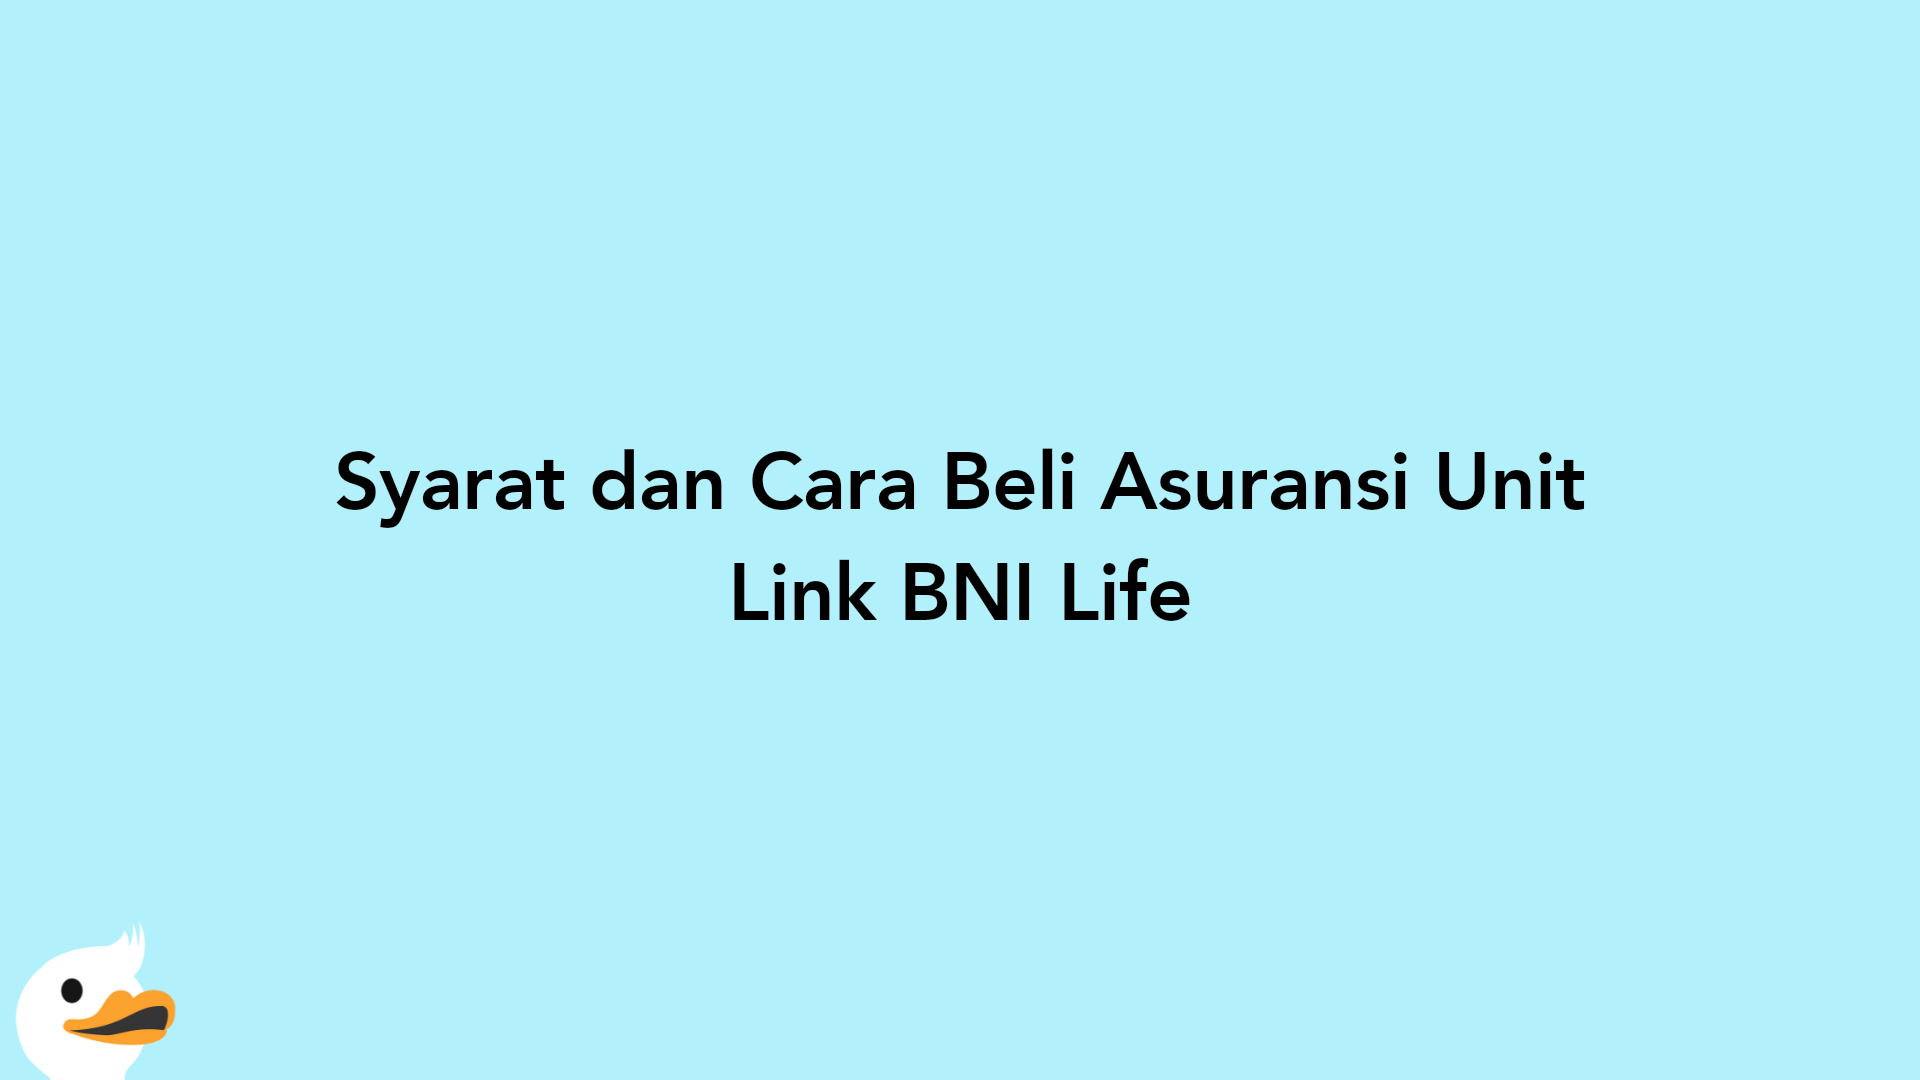 Syarat dan Cara Beli Asuransi Unit Link BNI Life